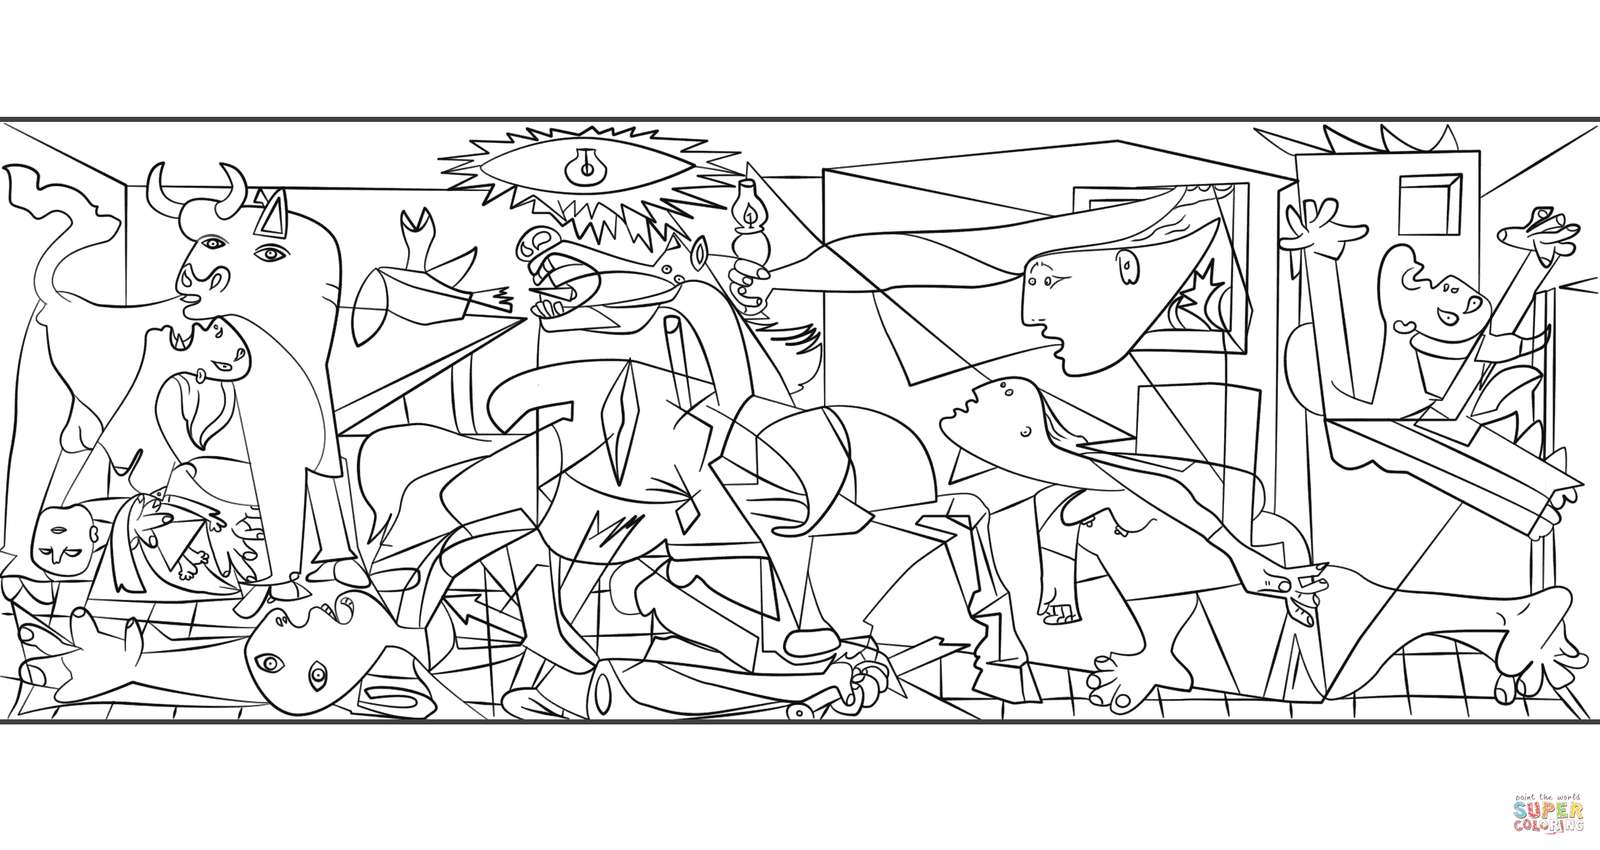 Picasso-Gemälde von Guernica Online-Puzzle vom Foto